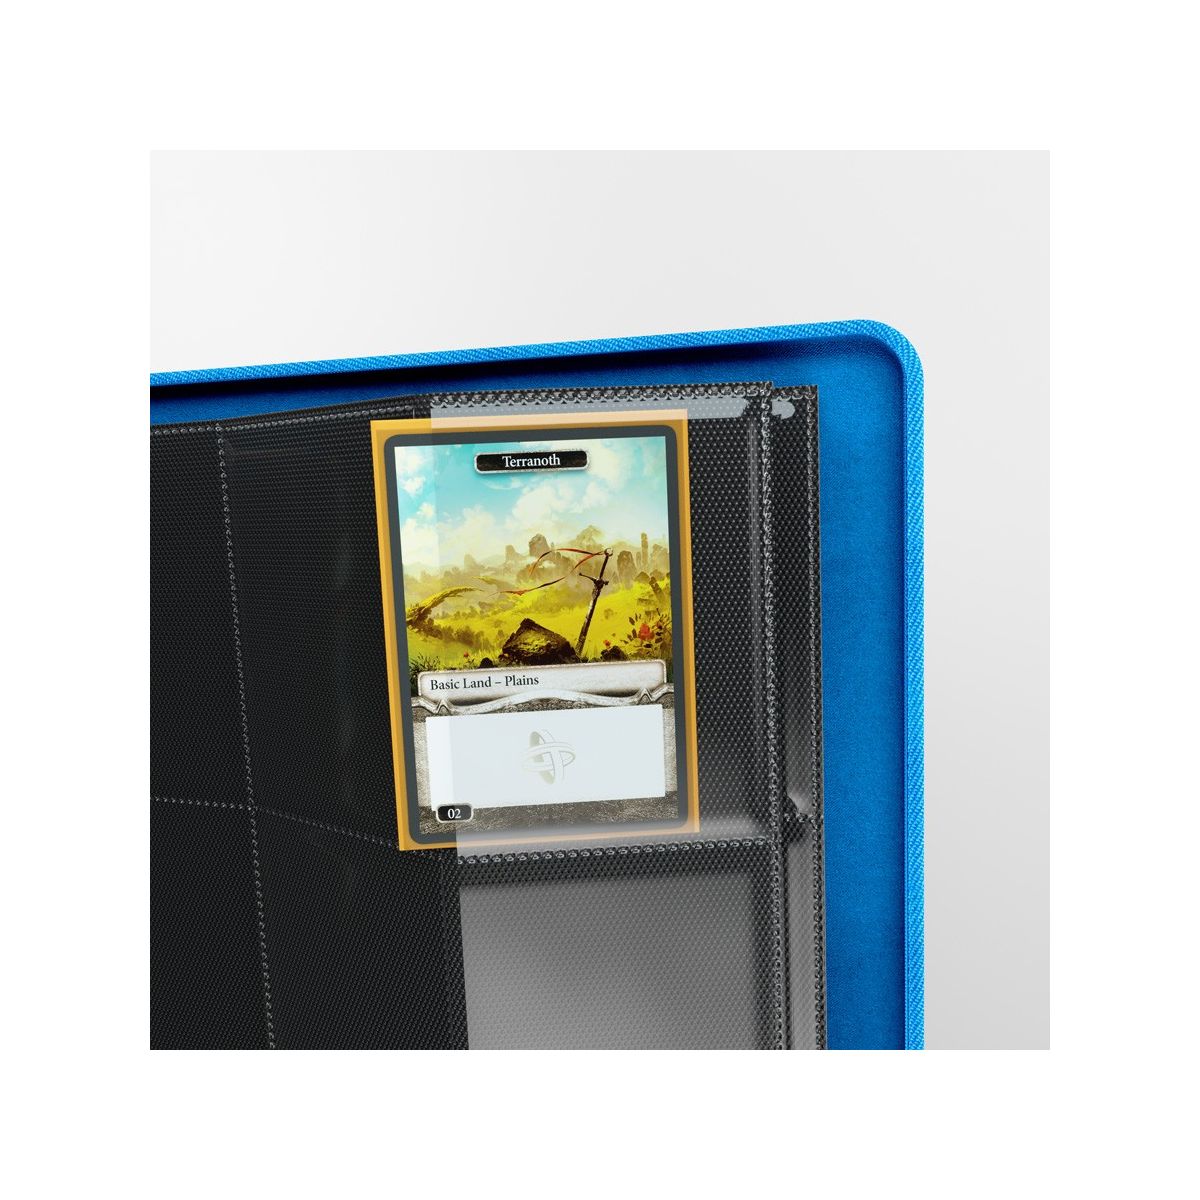 Gamegenic : Album Zip 8 Pocket Bleu